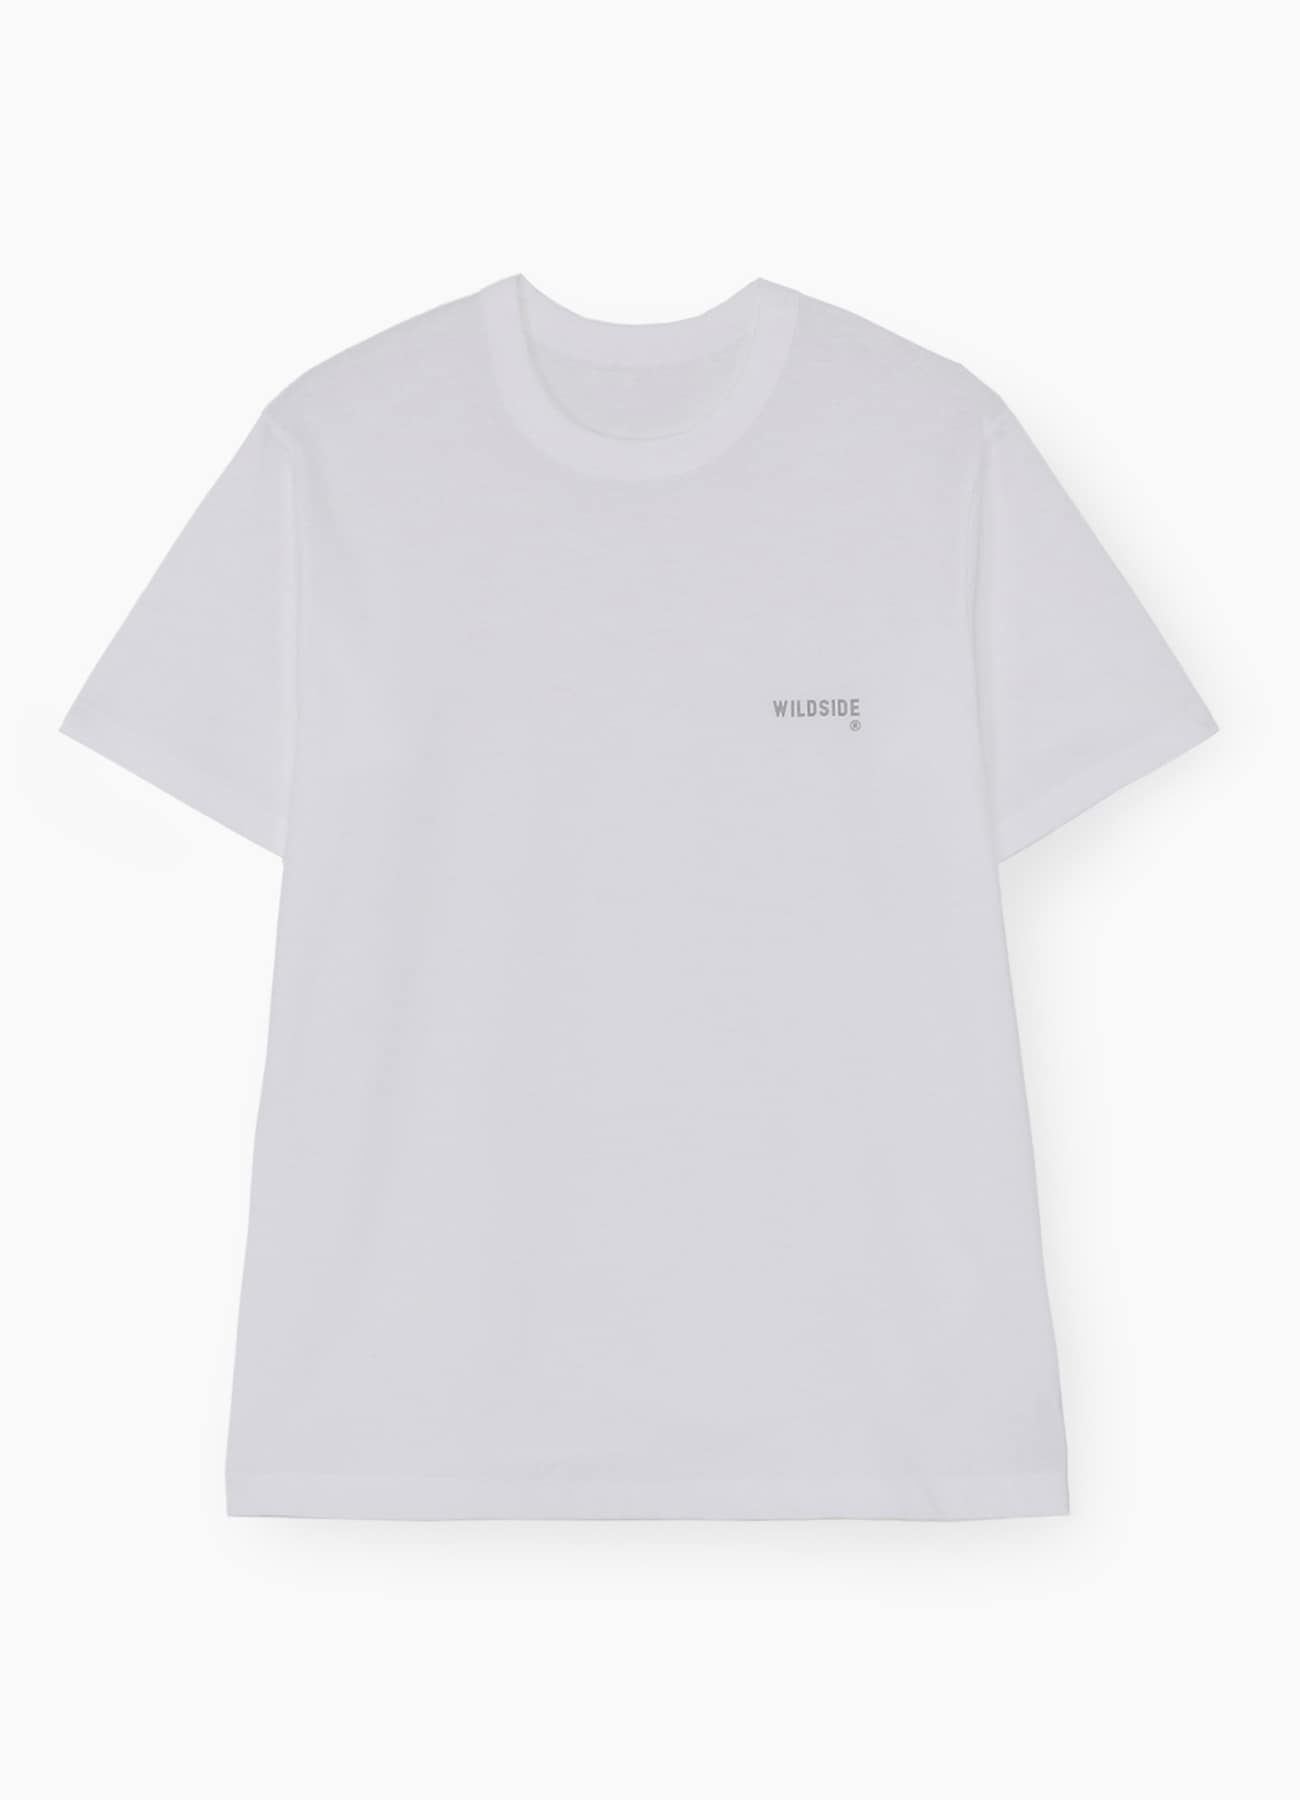 3 Pieces Pack T-shirts(XS White x Navy x Black): YOHJI YAMAMOTO 